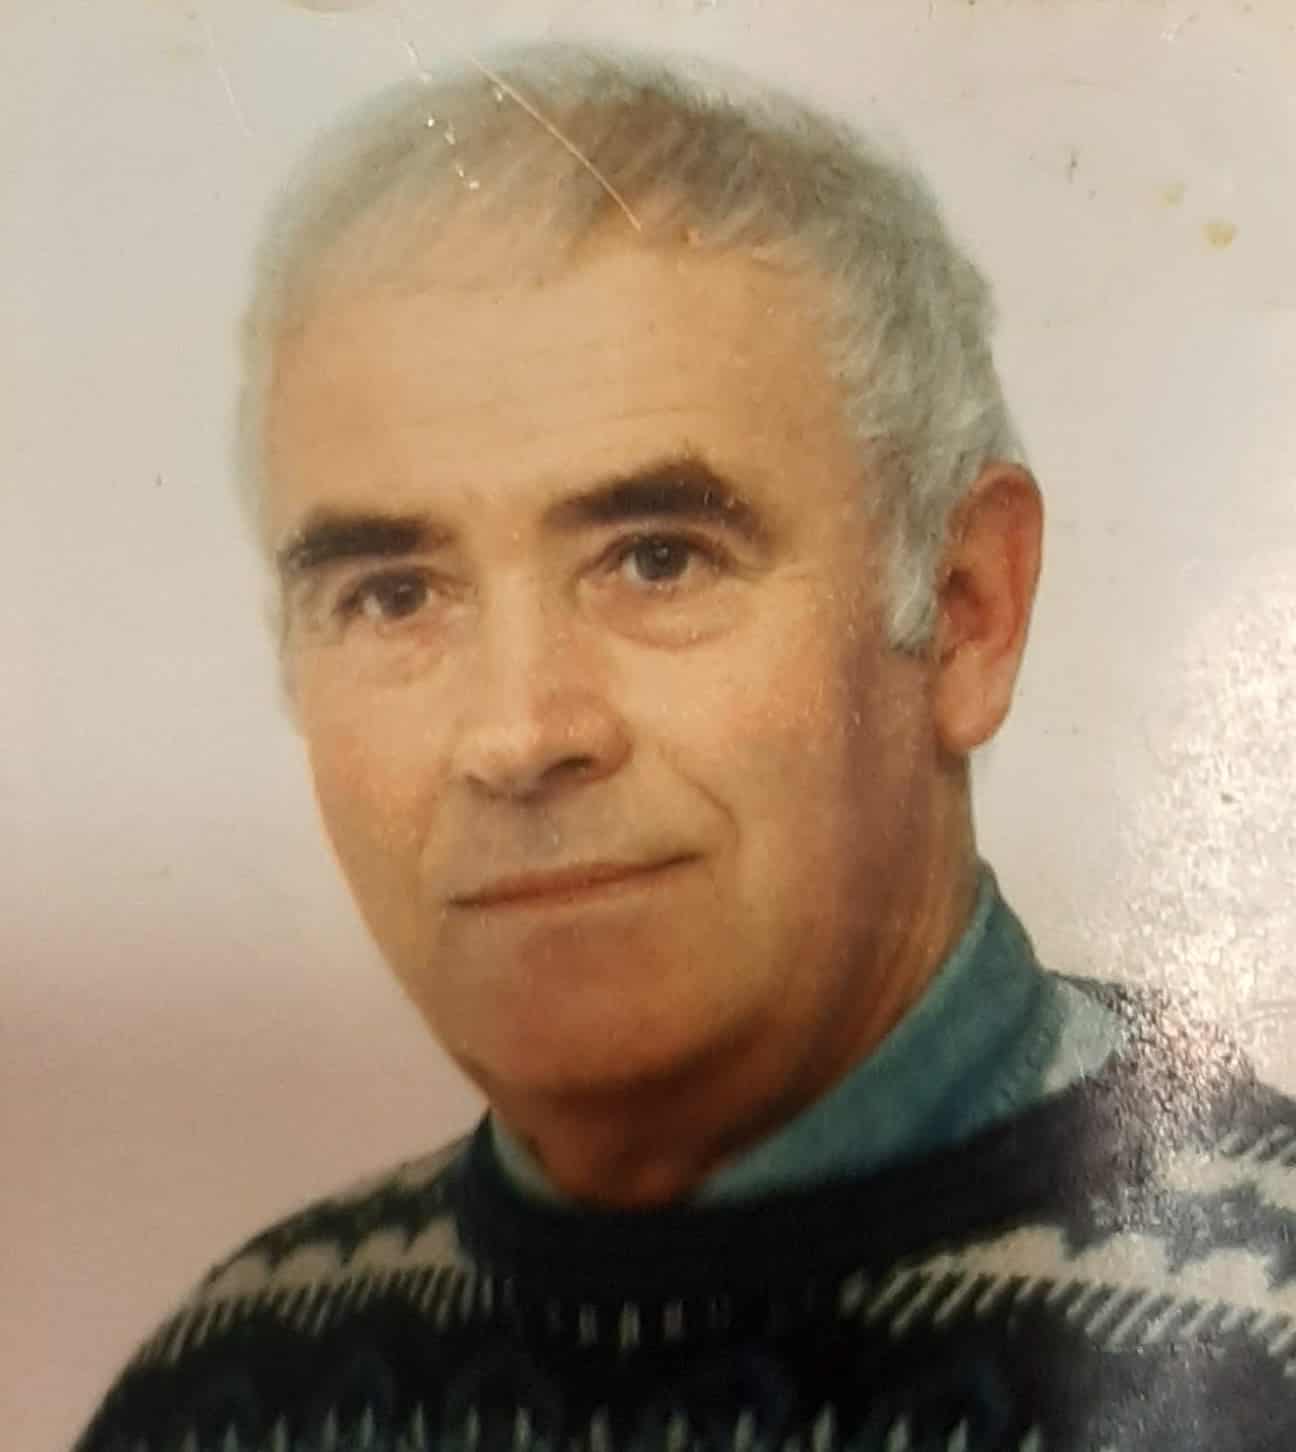 Policja poszukuje zaginionego 78-latka poszukiwania Olsztyn, Wiadomości, Wideo